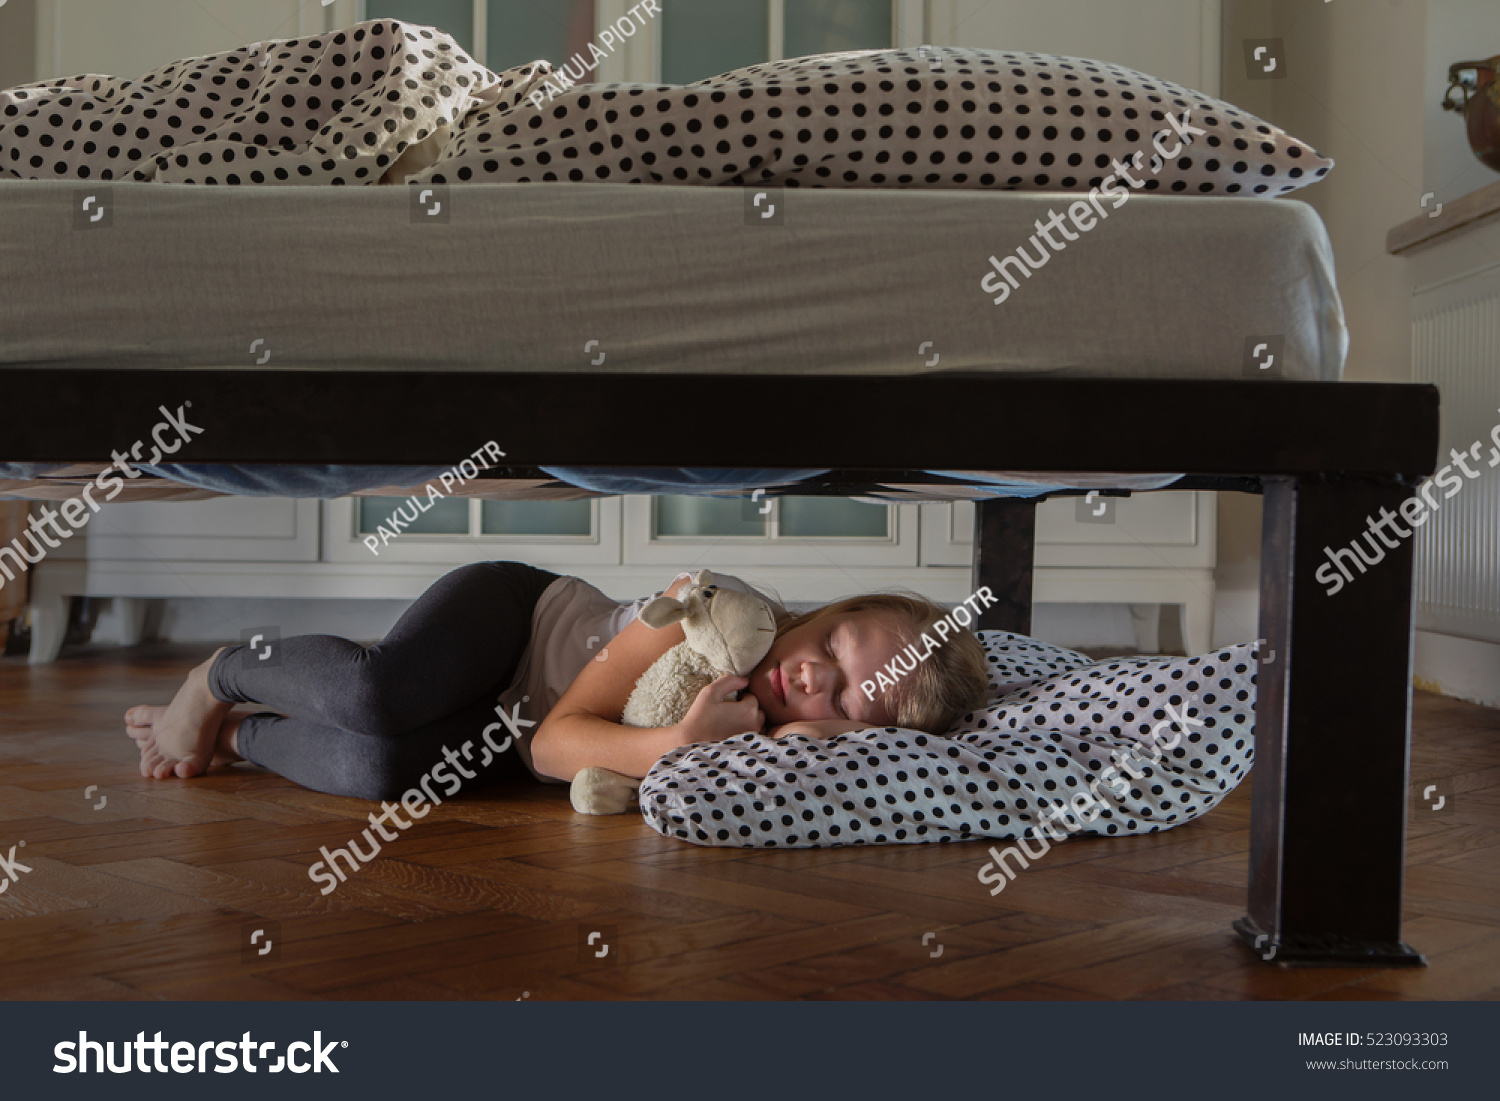 Hid under the bed. Спрятался под кровать. Ребенок под кроватью. Мальчик под кроватью.